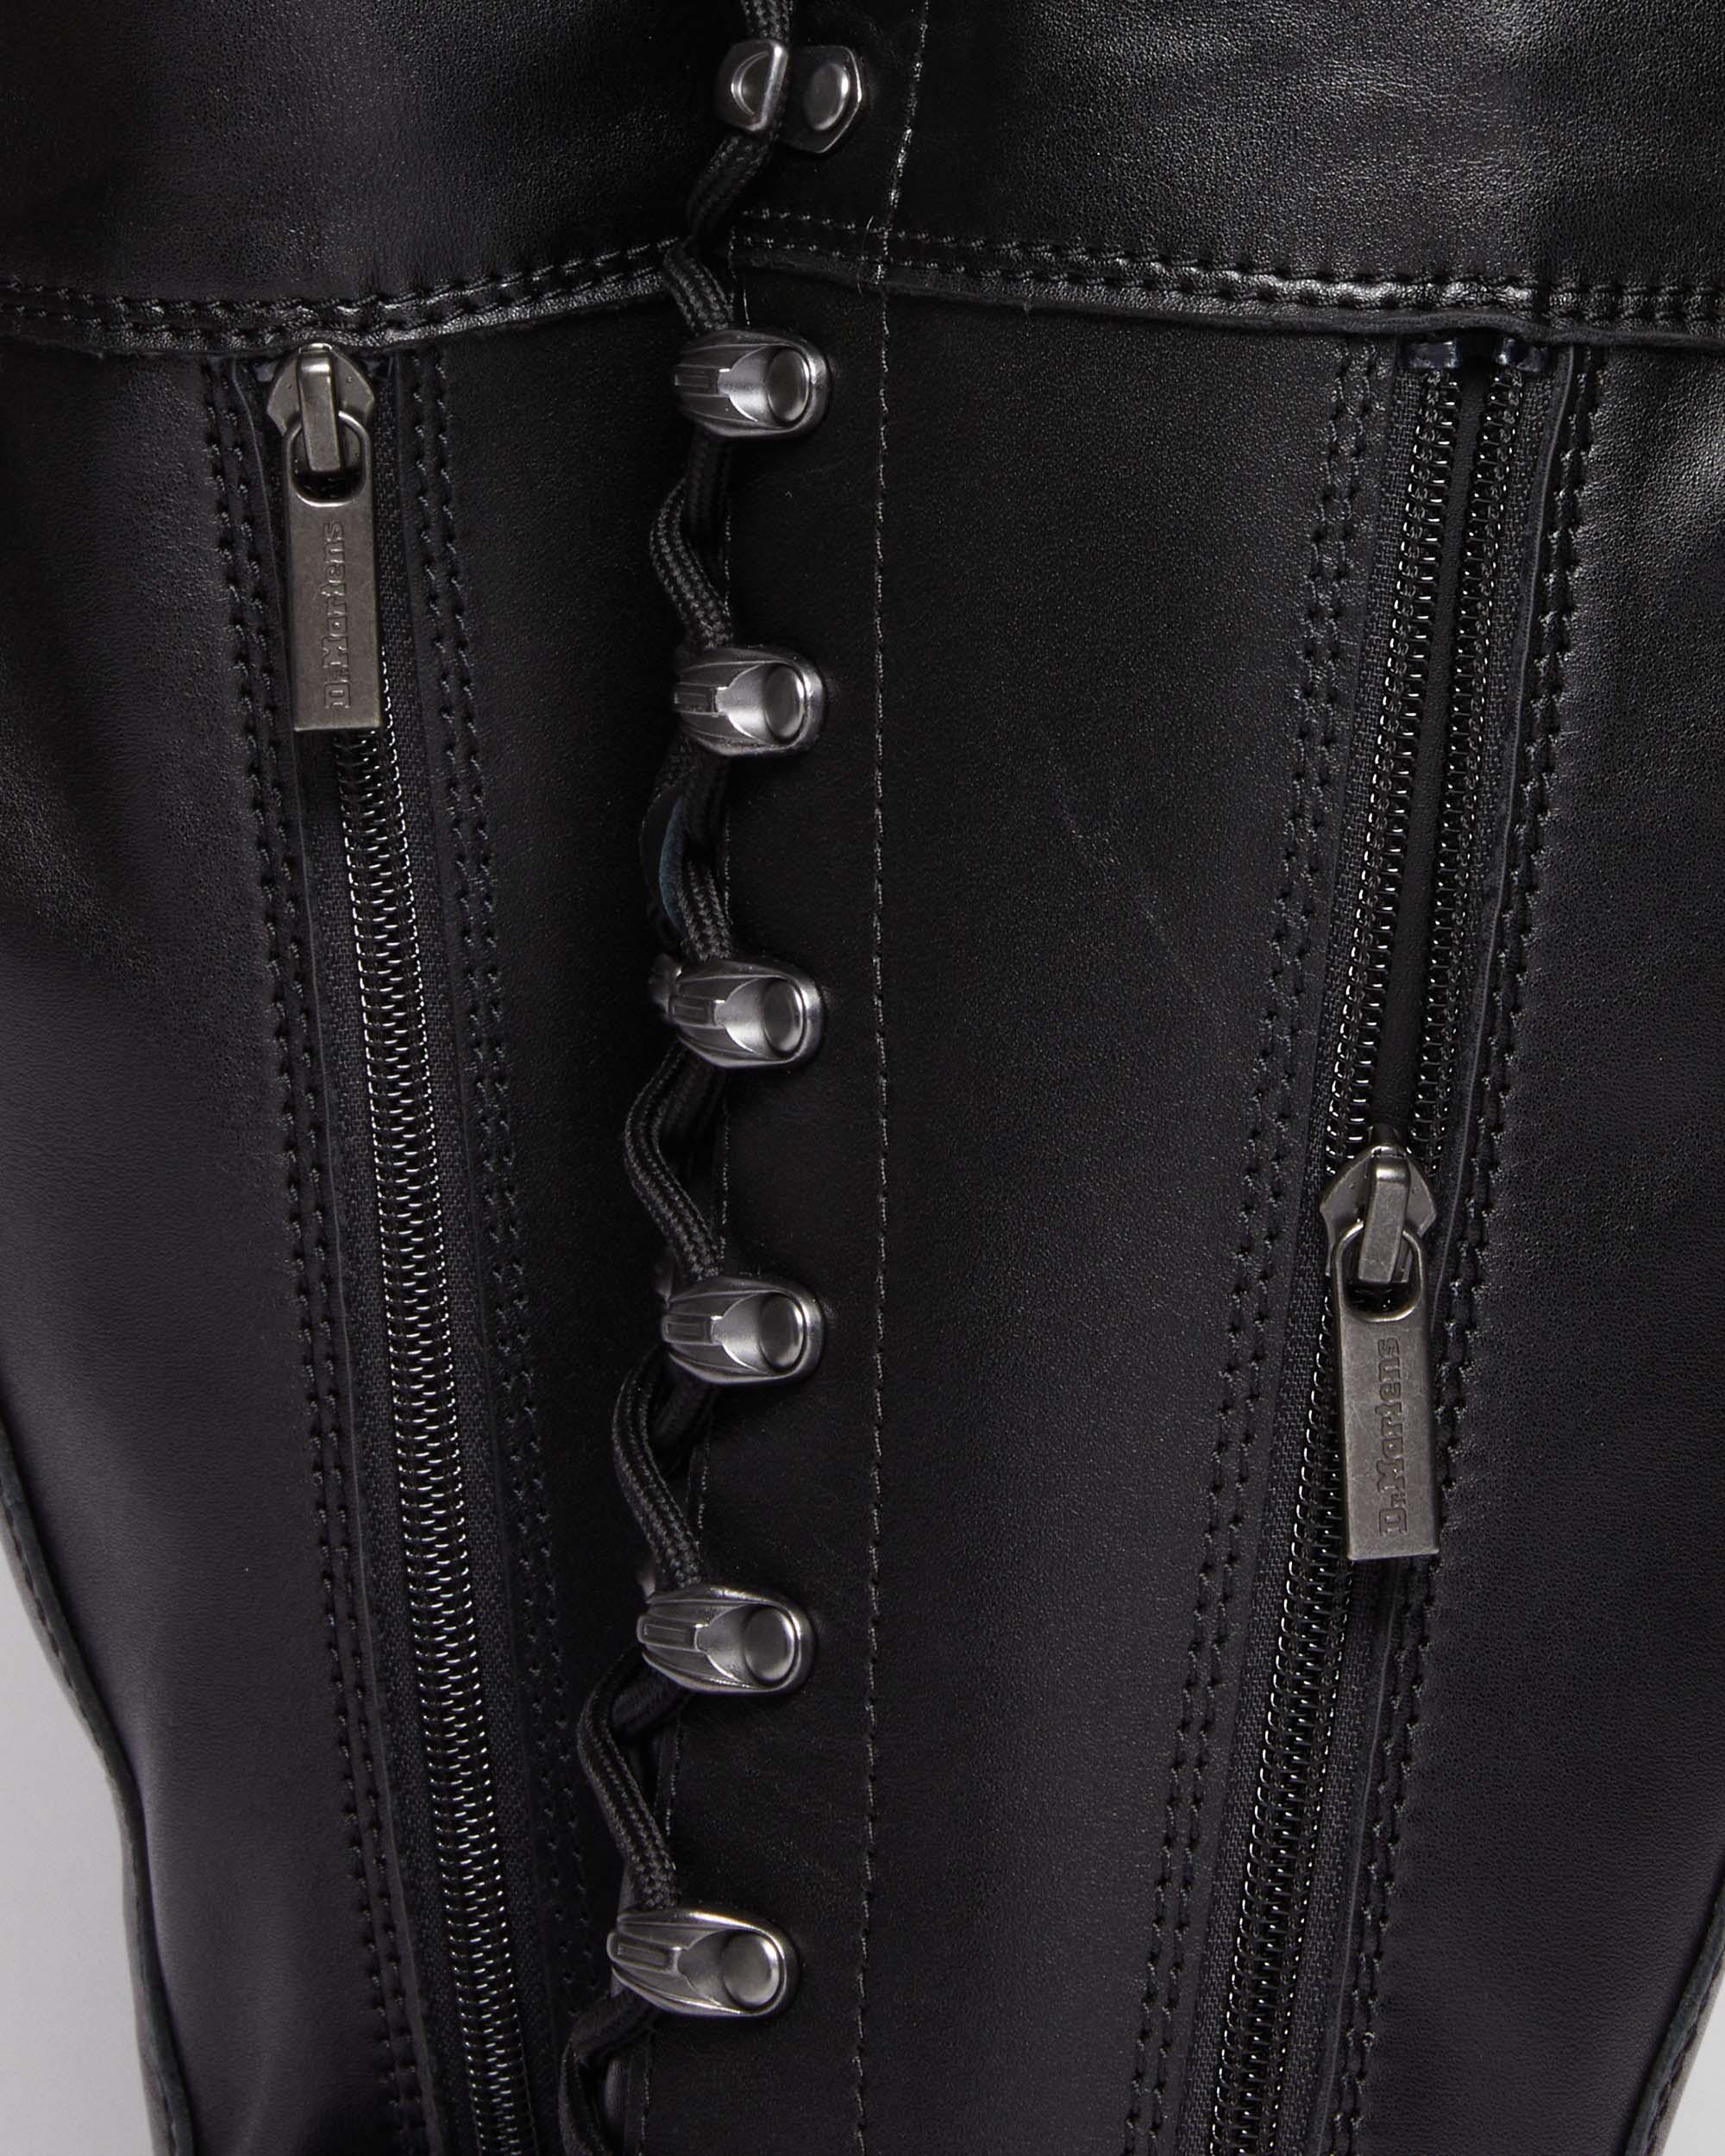 Audrick 22i XTRM Lace Leather BootsAudrick 22i XTRM Lace Leather Boots Dr. Martens